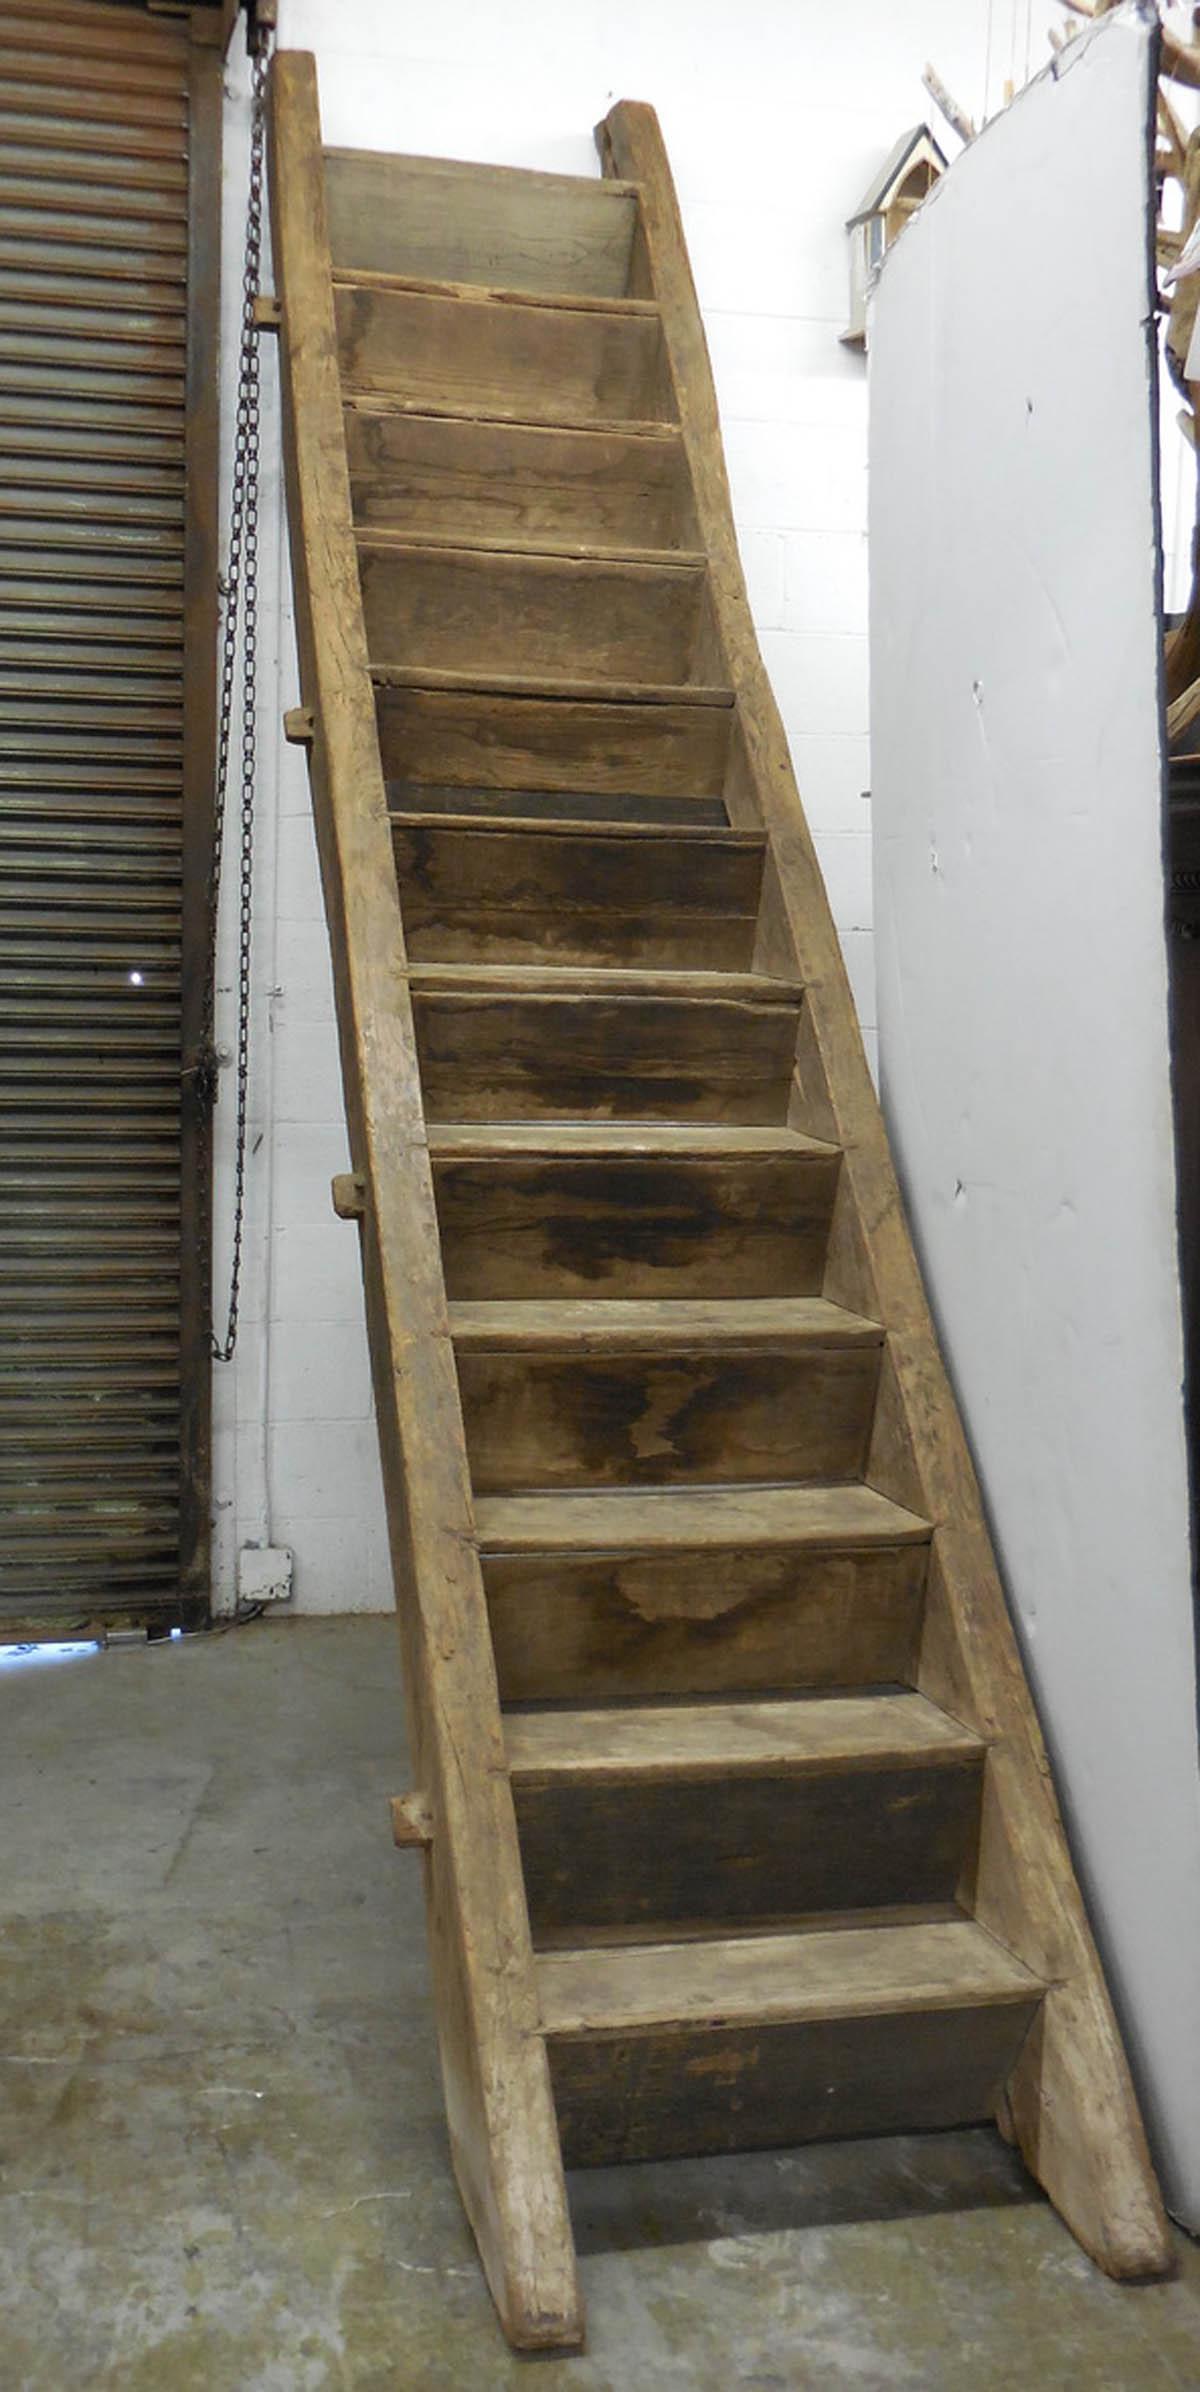 Alte Ulmenholztreppe in Schlitz- und Zapfenkonstruktion. Sehr solide. Aufrecht stehend, wie er installiert wäre, misst er 119 Zoll. Jede Stufe/Stufe ist 9 Zoll tief und die Erhöhung ist 9,5 Zoll hoch. Die Breite der Treppe beträgt 30